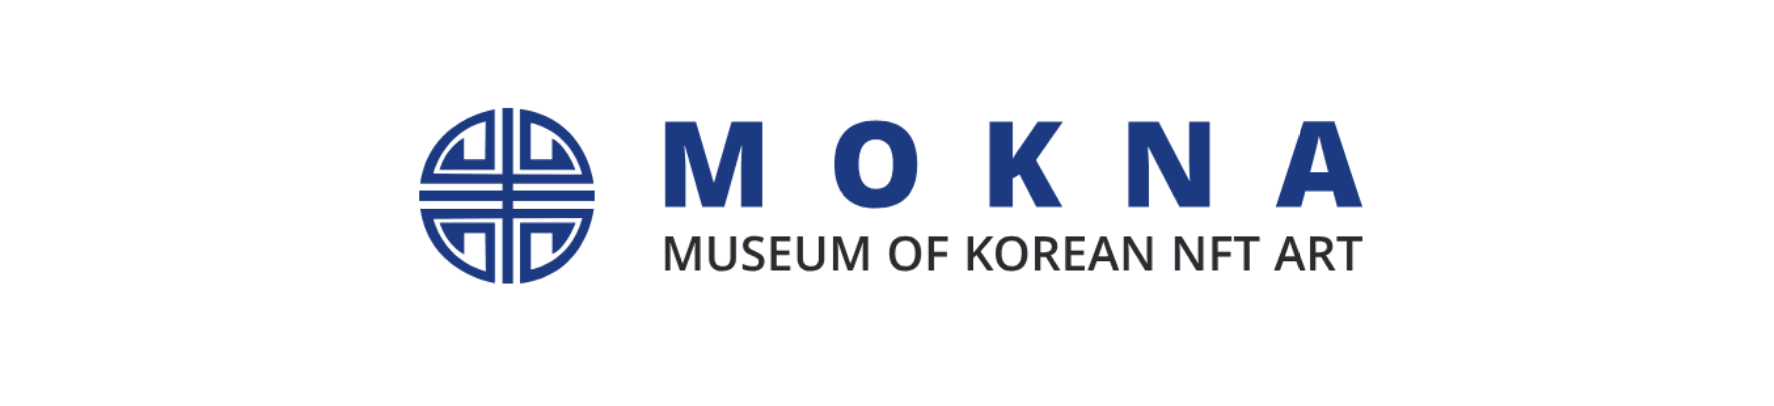 MOKNA banner